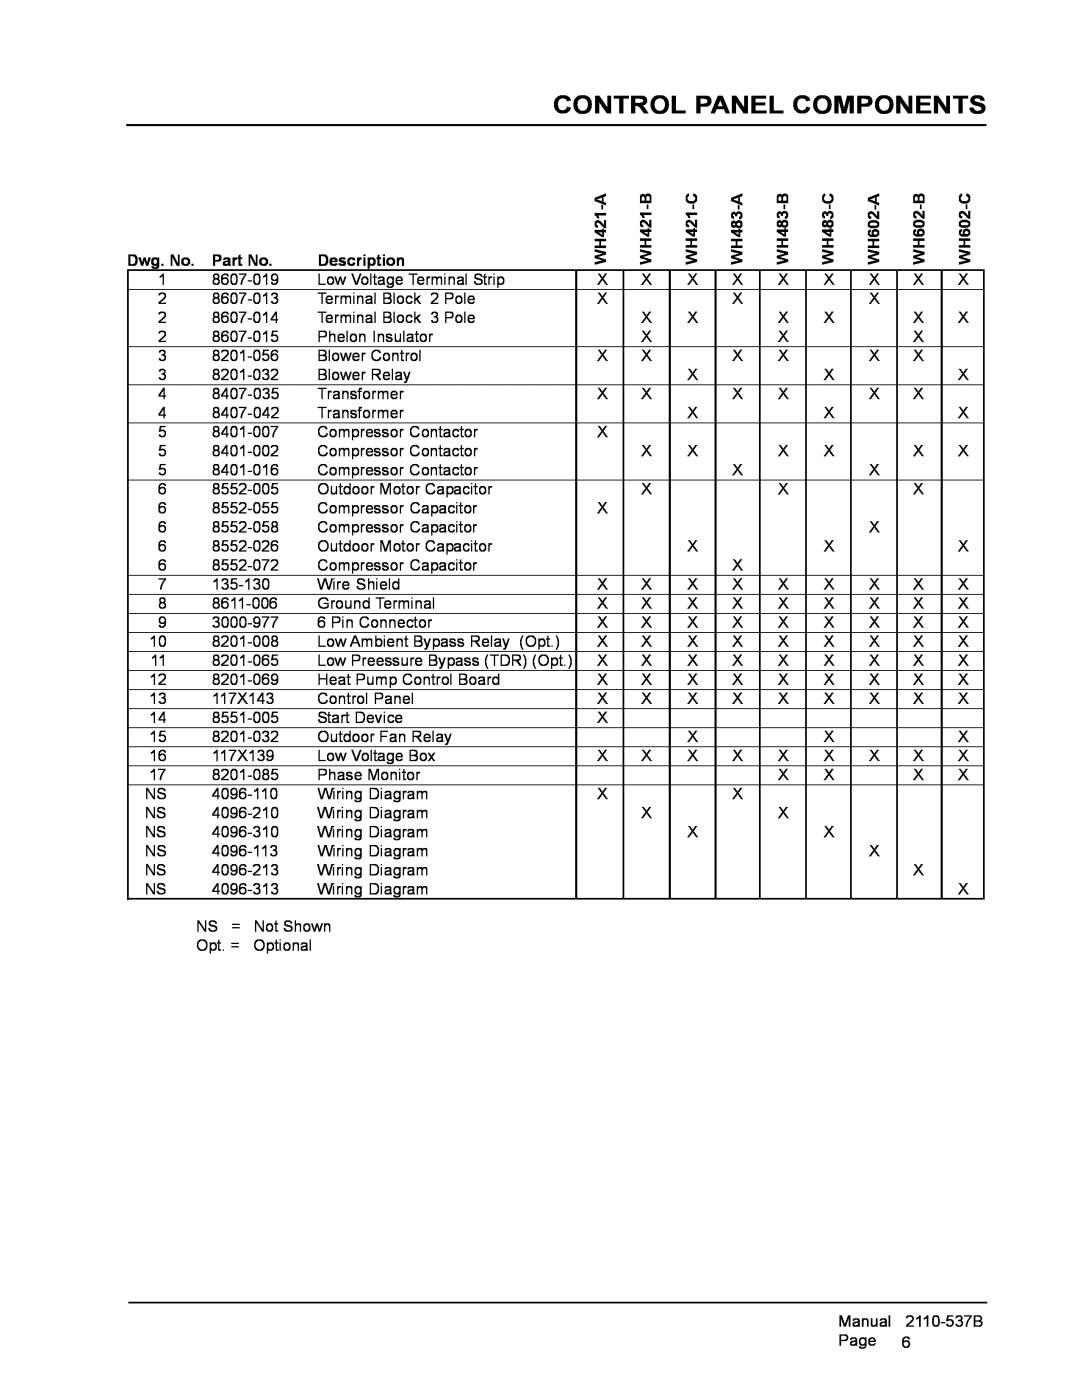 Bard Control Panel Components, Dwg. No. Part No, Description, WH421-A, WH421-B, WH421-C, WH483-A, WH483-B, WH483-C 